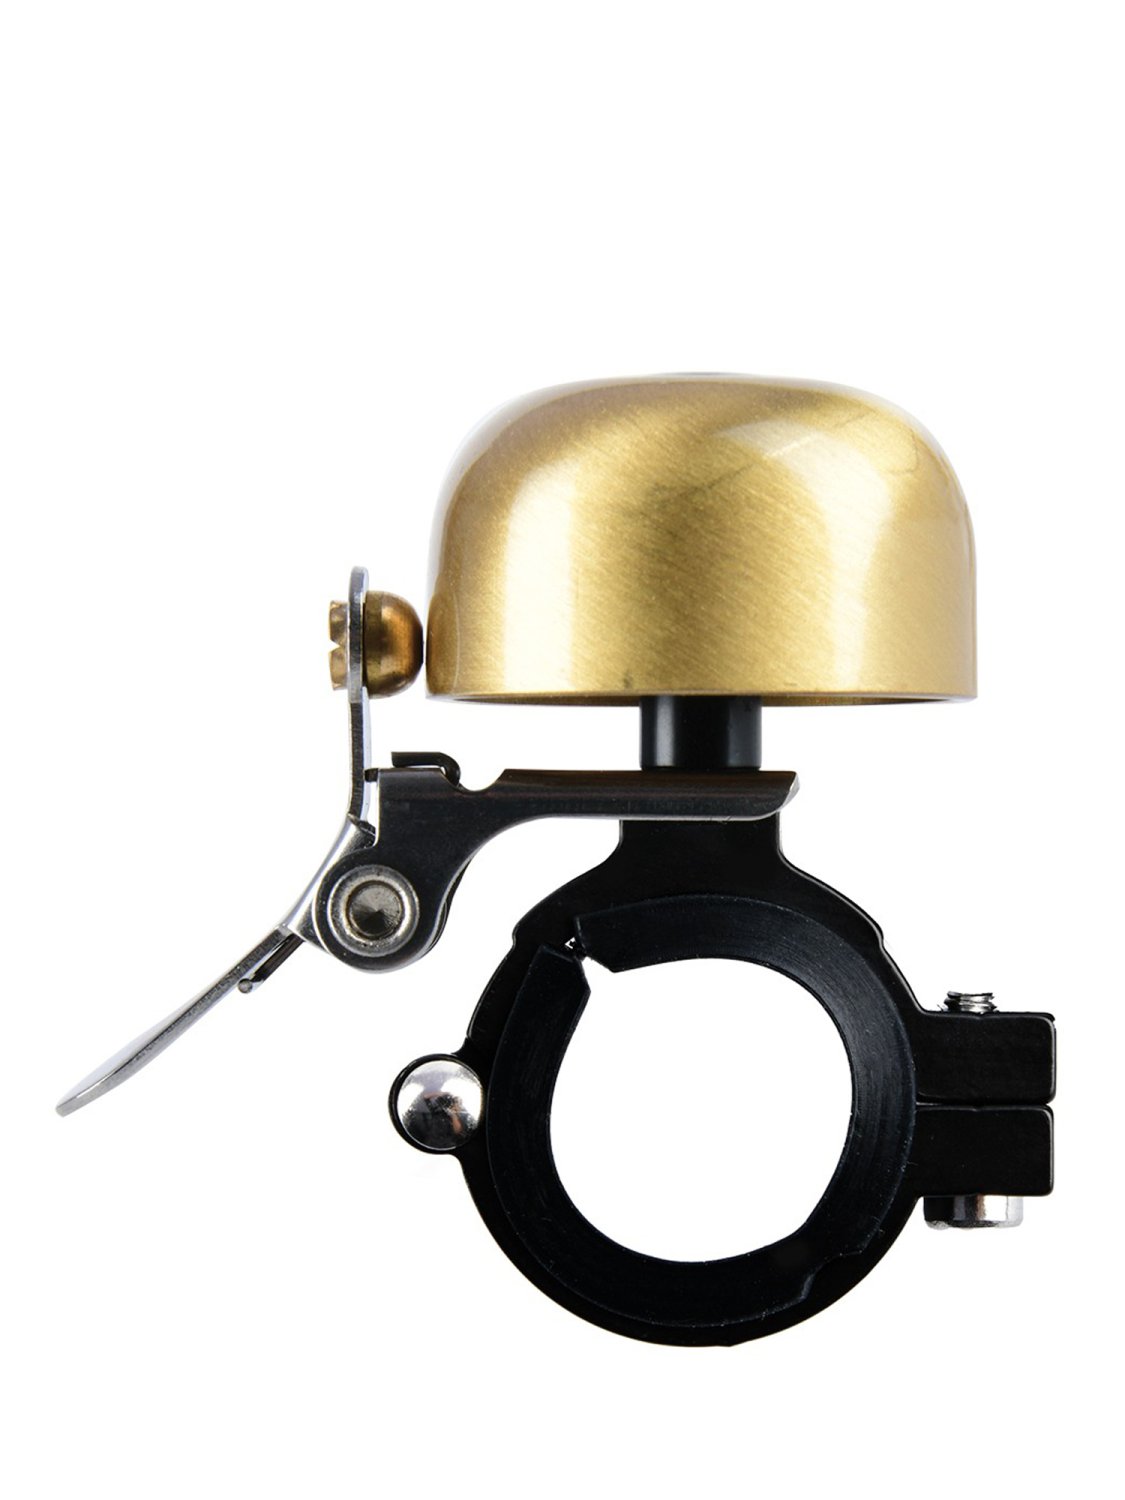 Звонок велосипедный Oxford Mini Ping Brass Bell Gold б/р, BE157G звонок фонарик велосипедный globber mini buzzer розовый 530 110